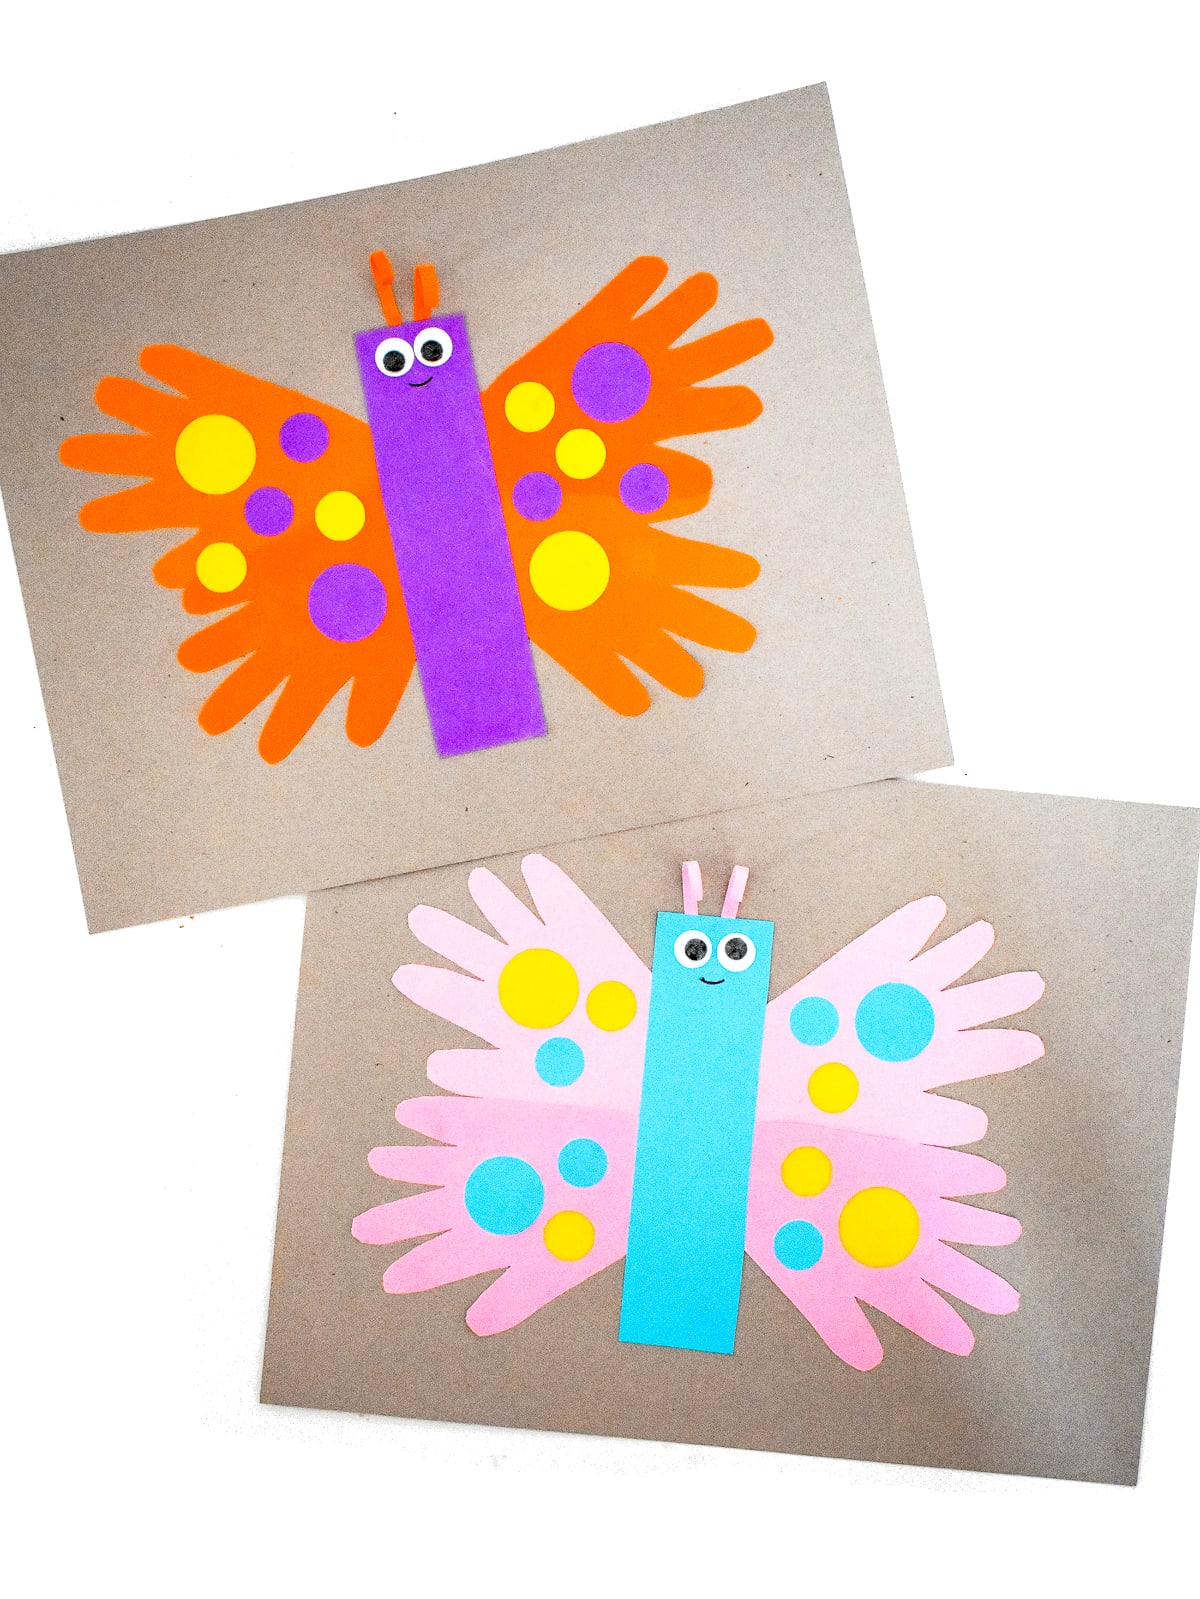 Handprint Butterfly Craft